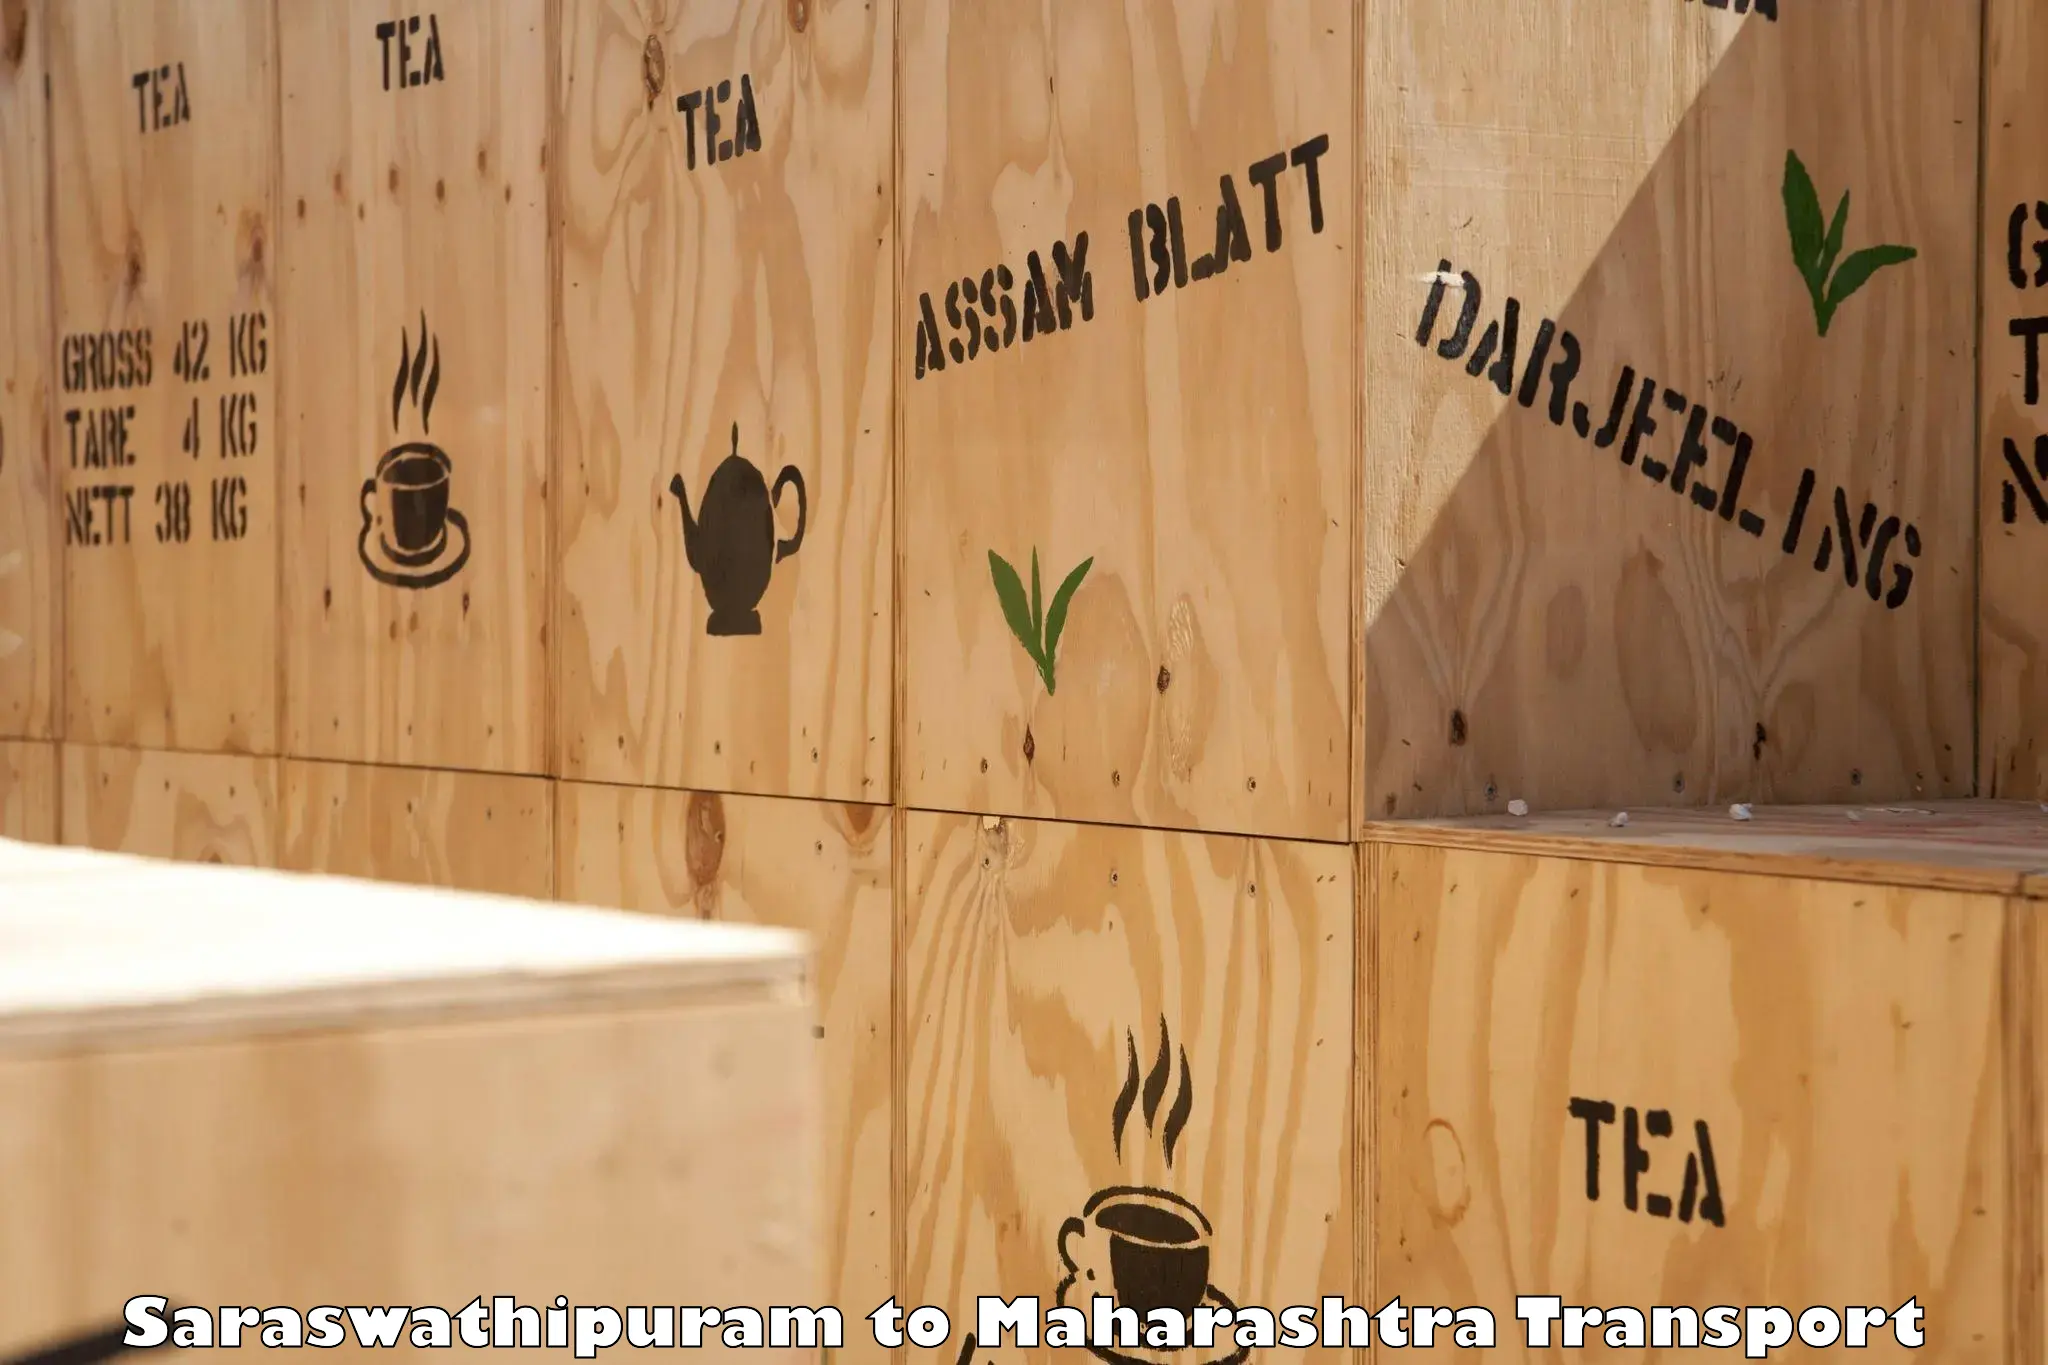 Container transport service Saraswathipuram to Latur